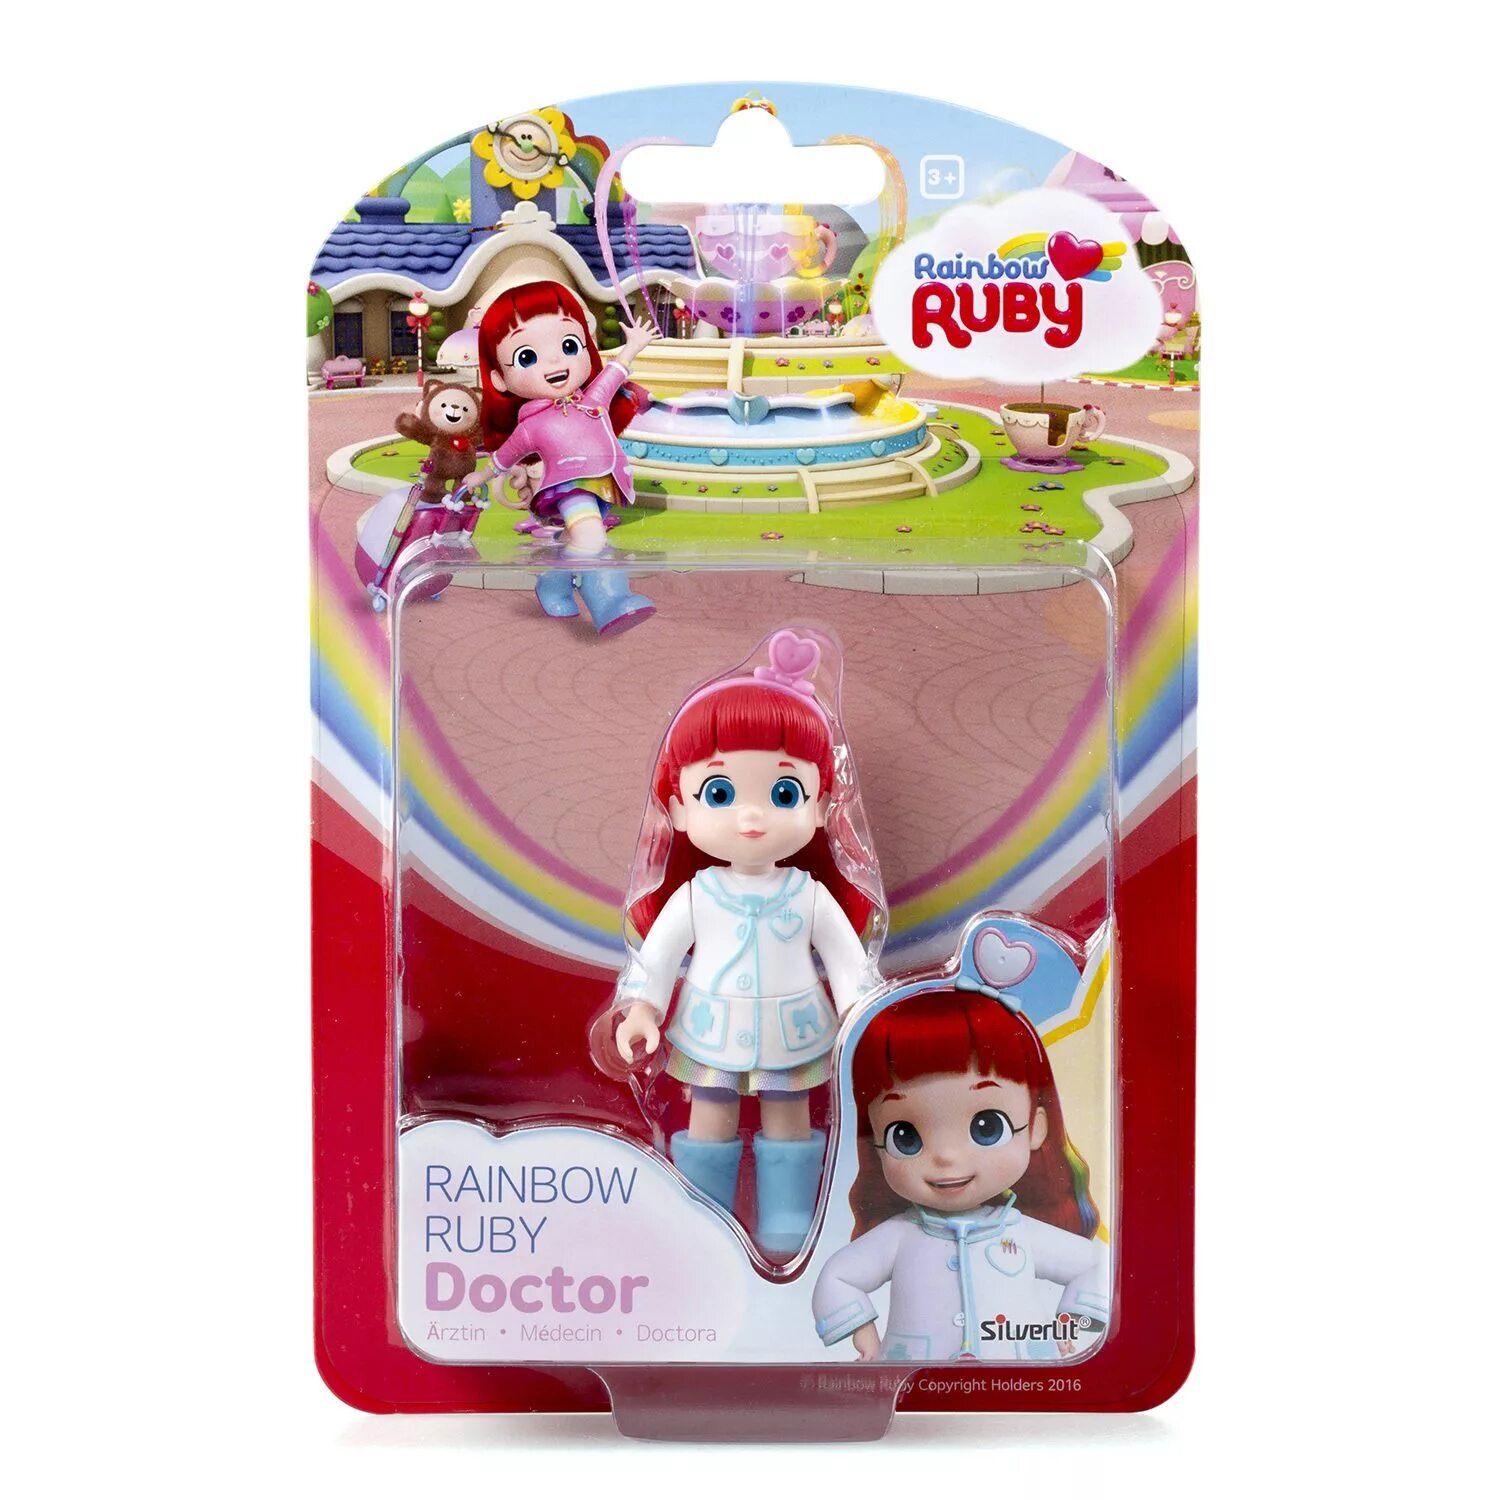 Фигурка Руби доктор (89004). Rainbow Ruby кукла. Кукла Rainbow Ruby Руби доктор. Rainbow Ruby чемоданчик.